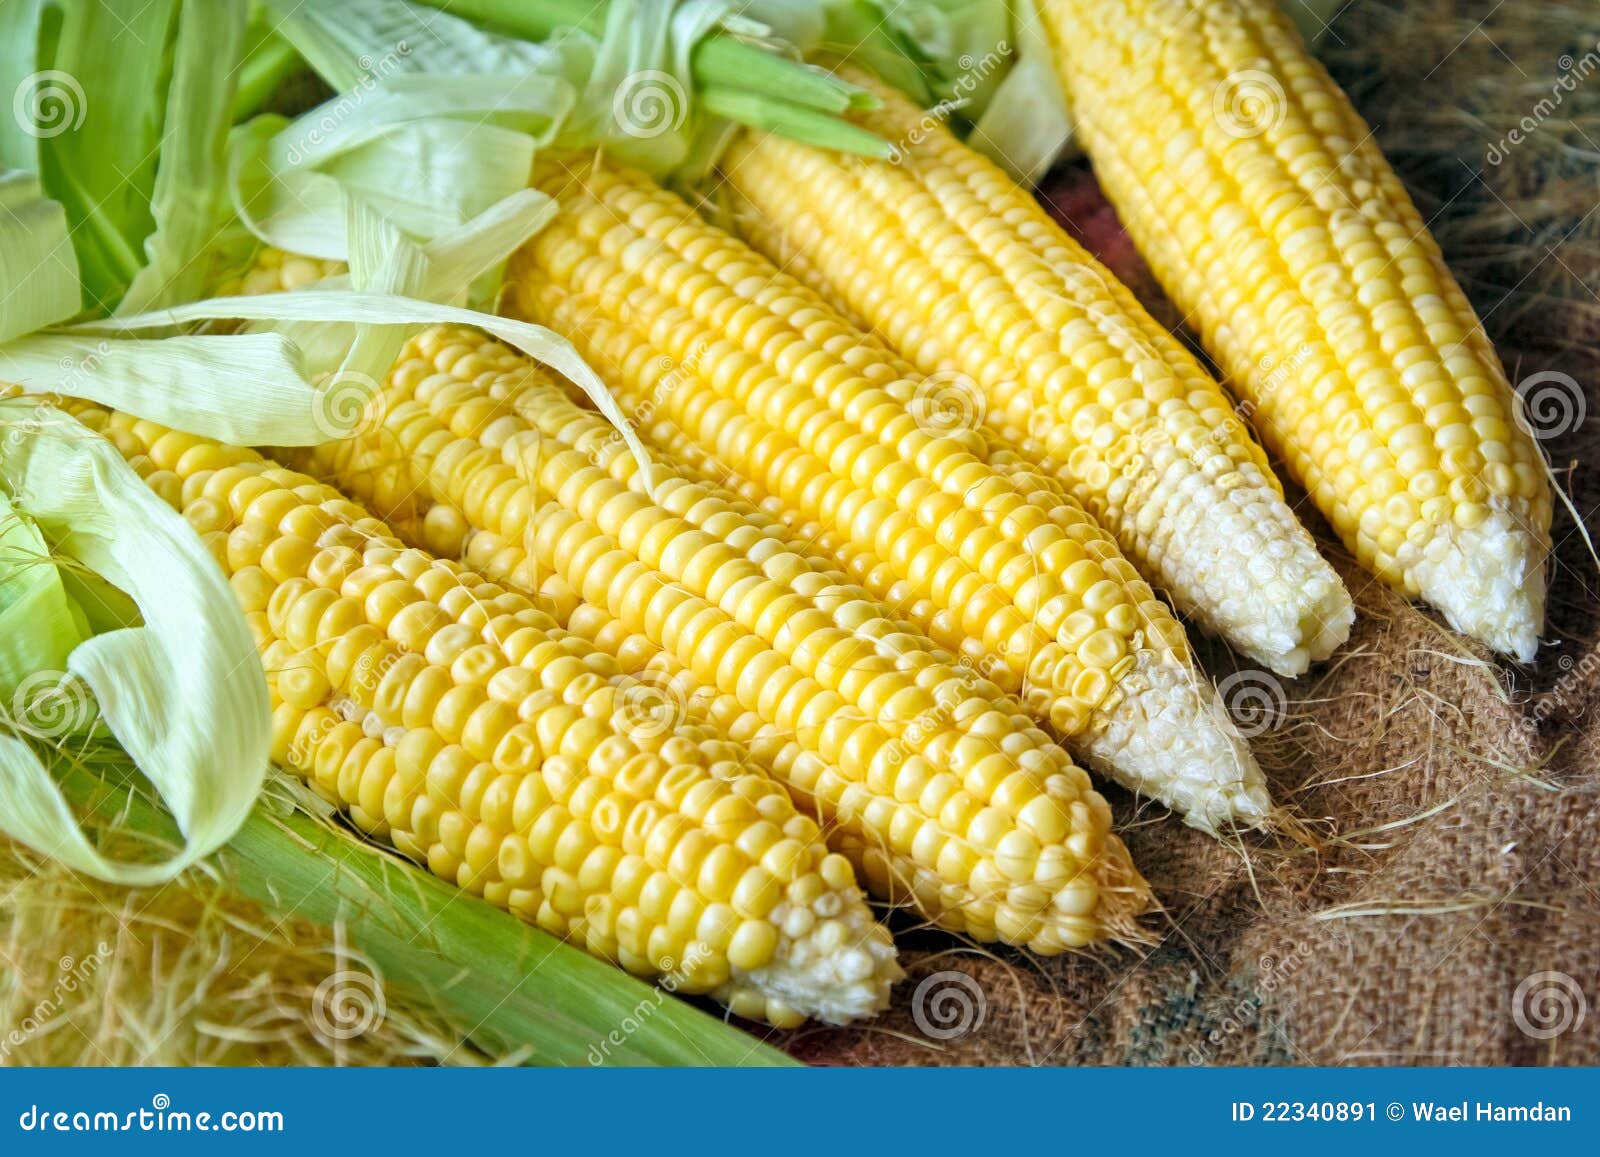 我国玉米的生产发展前景如何？ - 农业百科